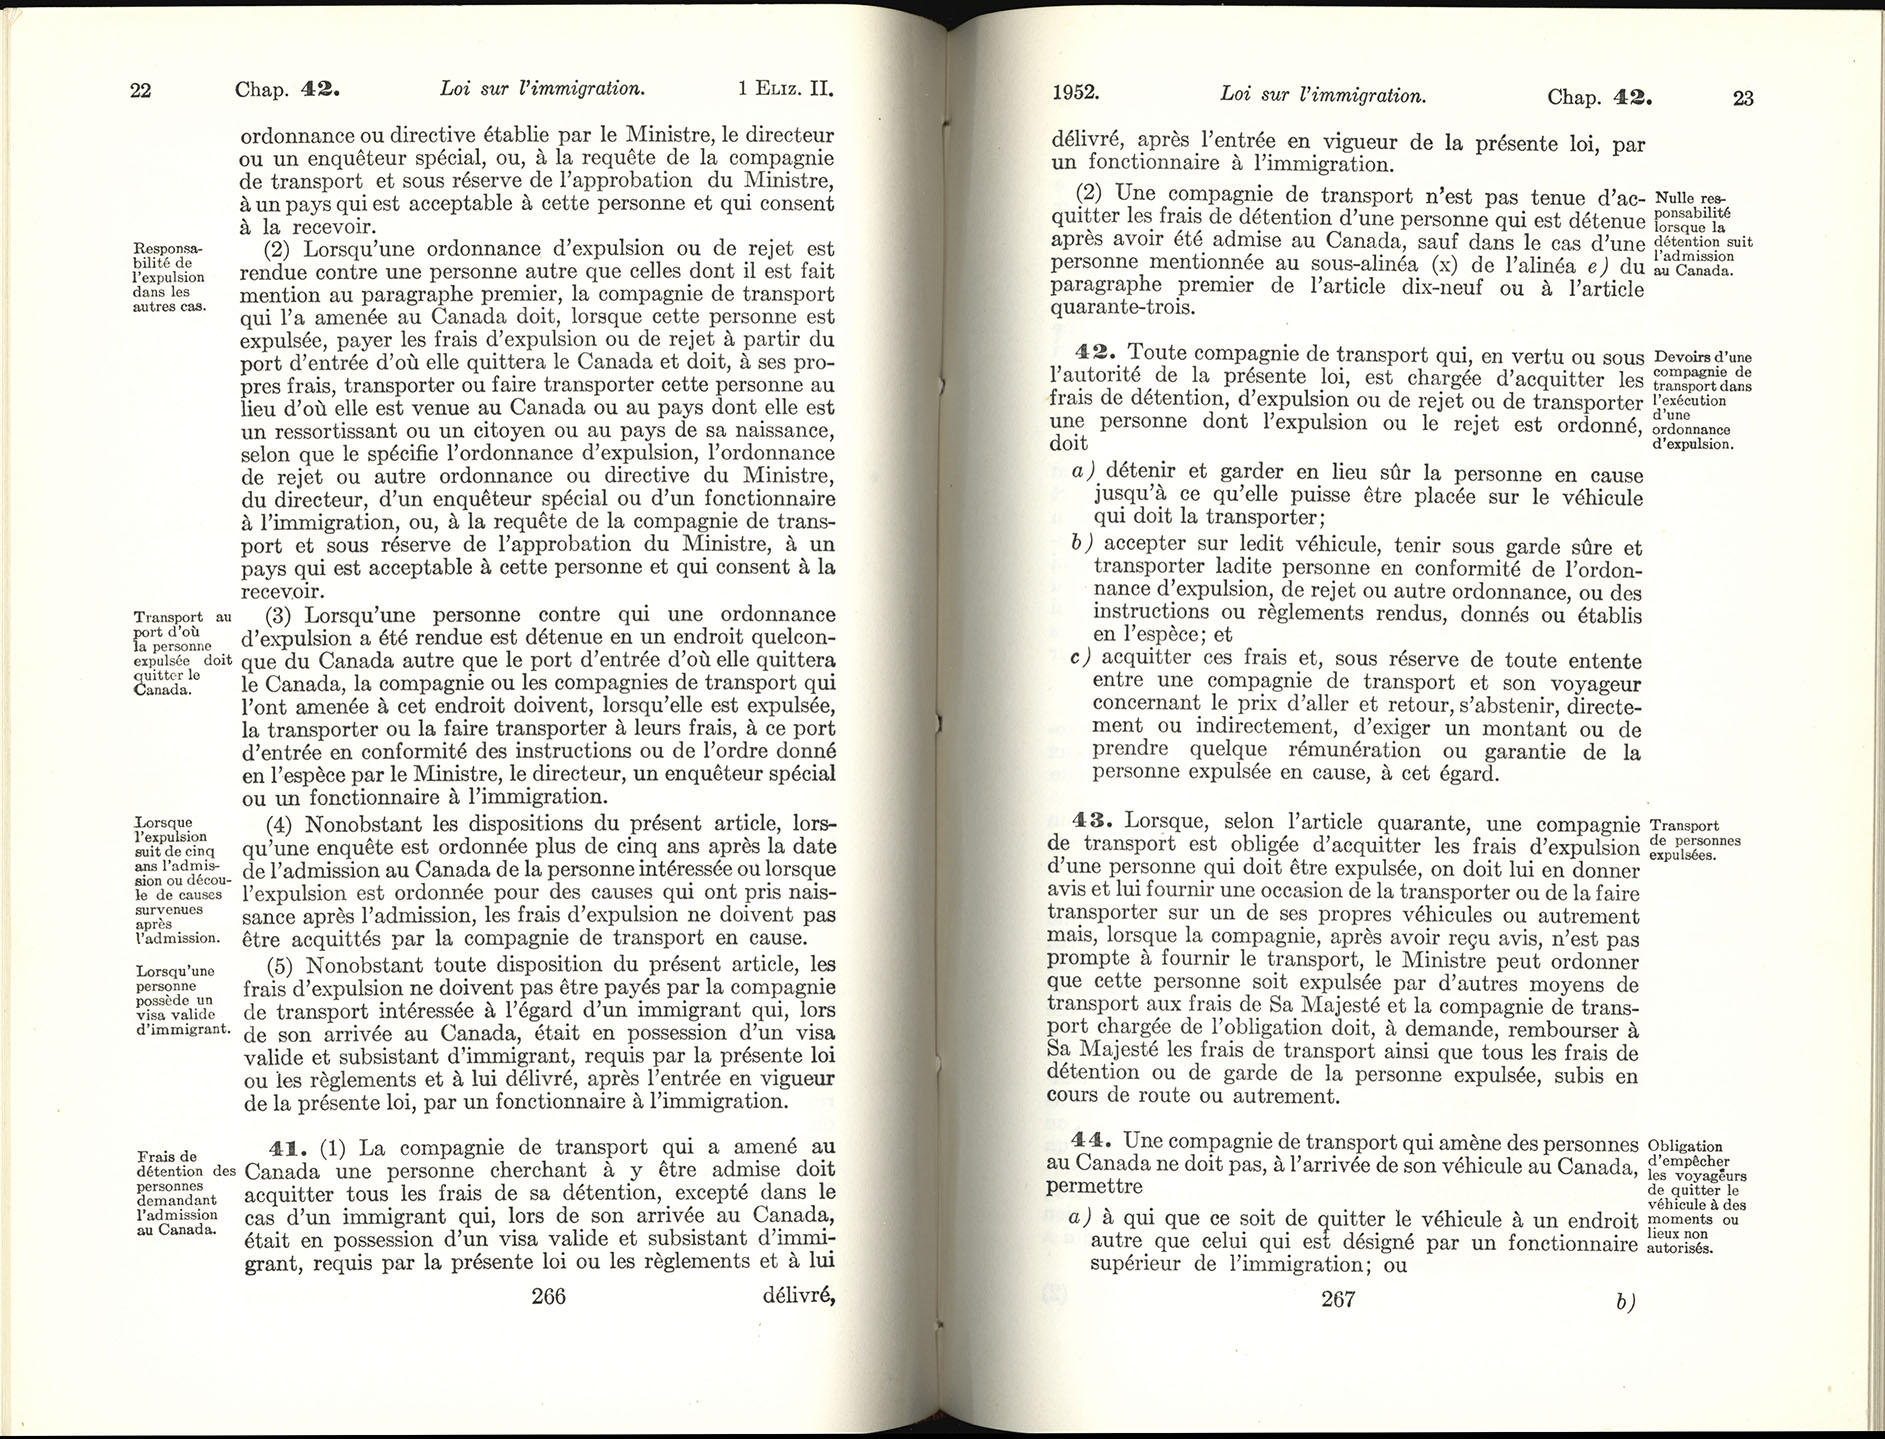 Chap 42 Page 266, 267 Loi sur l’immigration, 1952